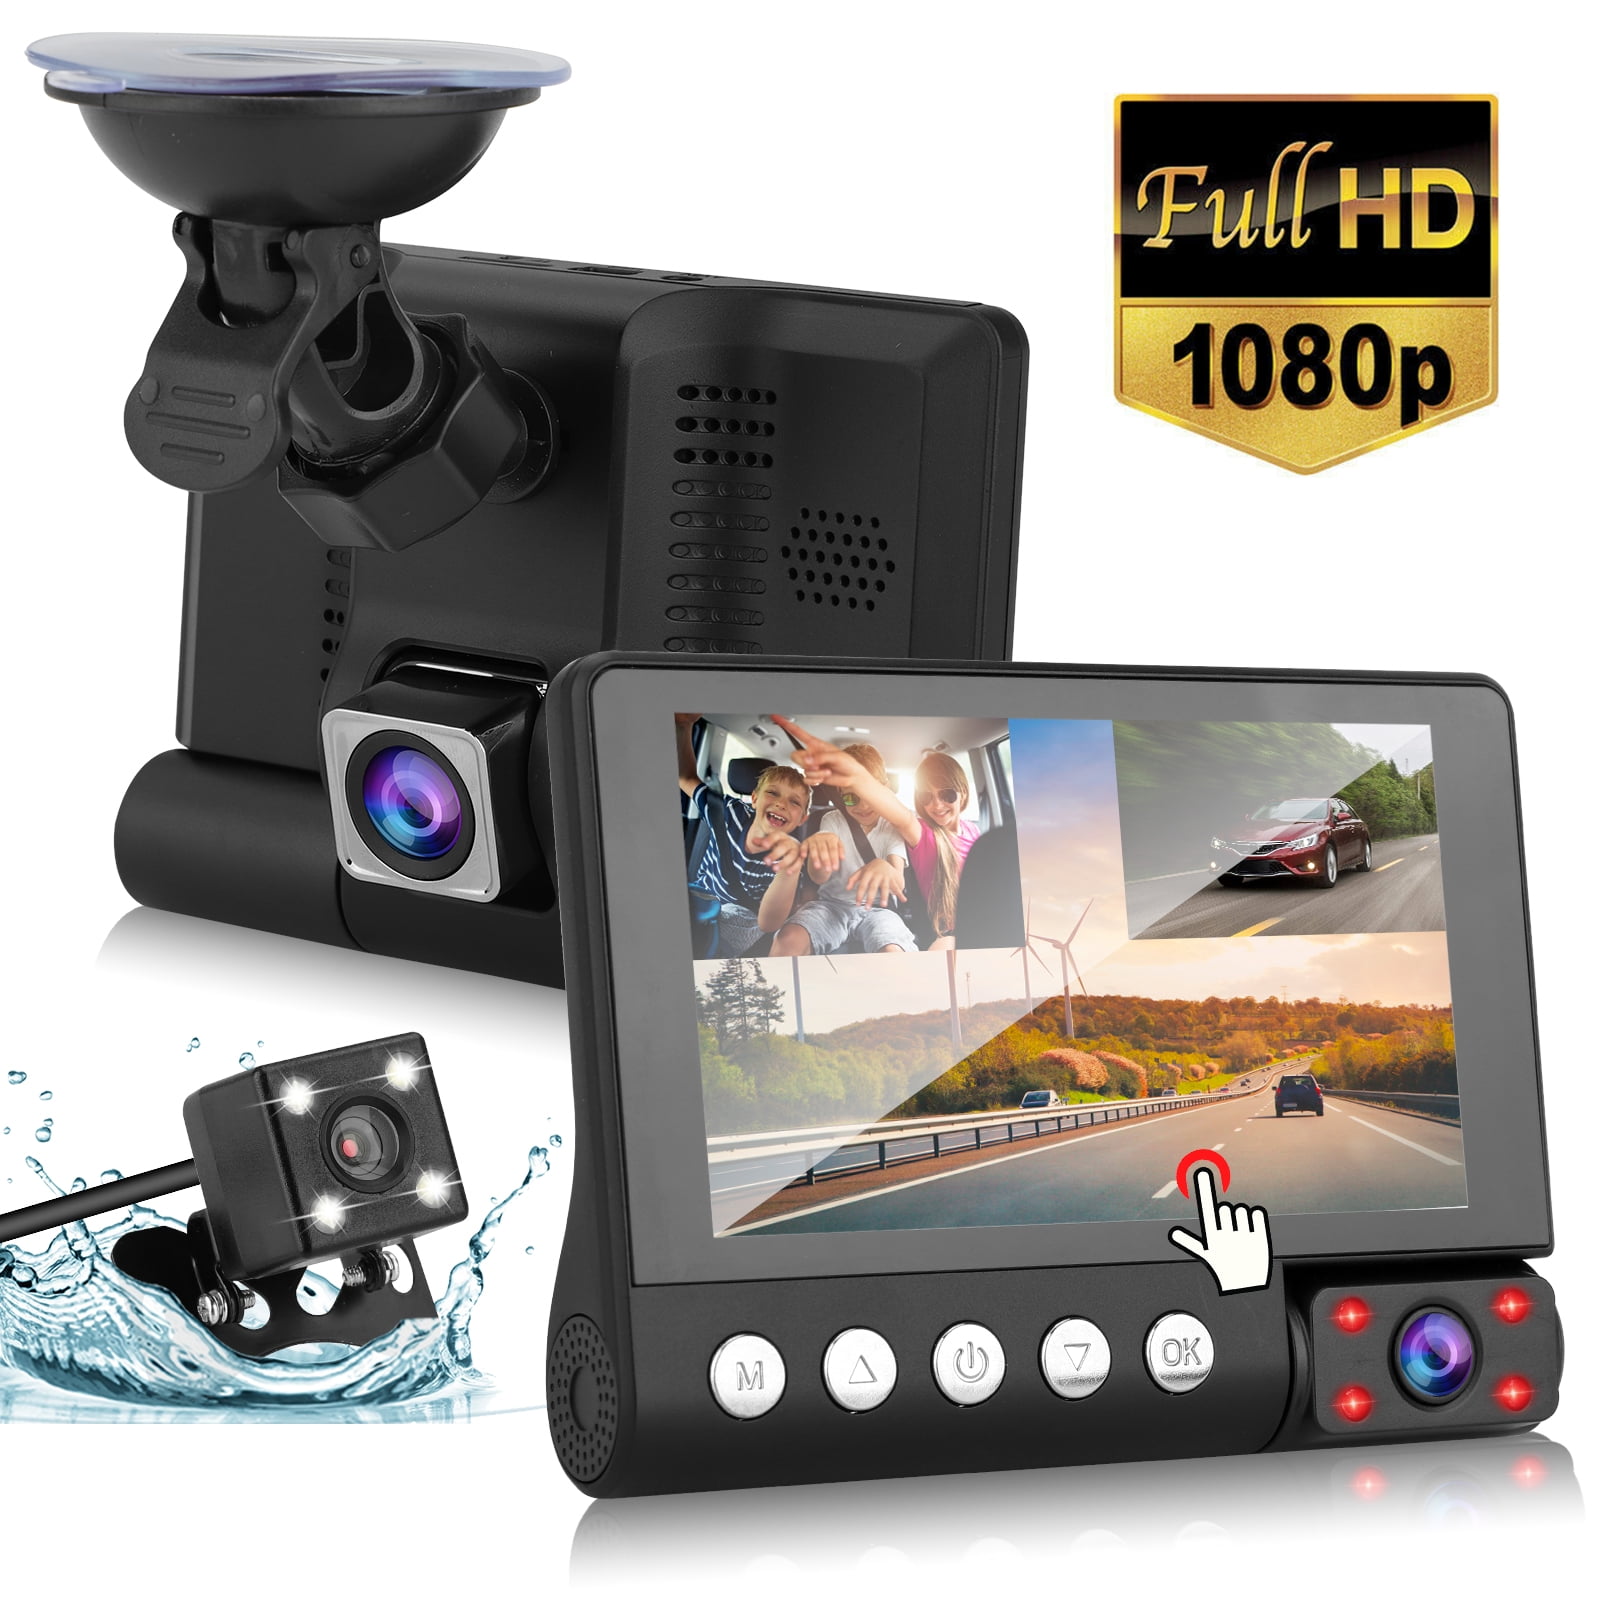 Loop-Aufnahme Parkmonitor Full HD Autokamera Dashcam 1080P Dashcam Autokamera Video Recorder mit 170° Weitwinkelobjektiv,WDR,3 Zoll LCD-Bildschirm Nachtsicht und G-Sensor 